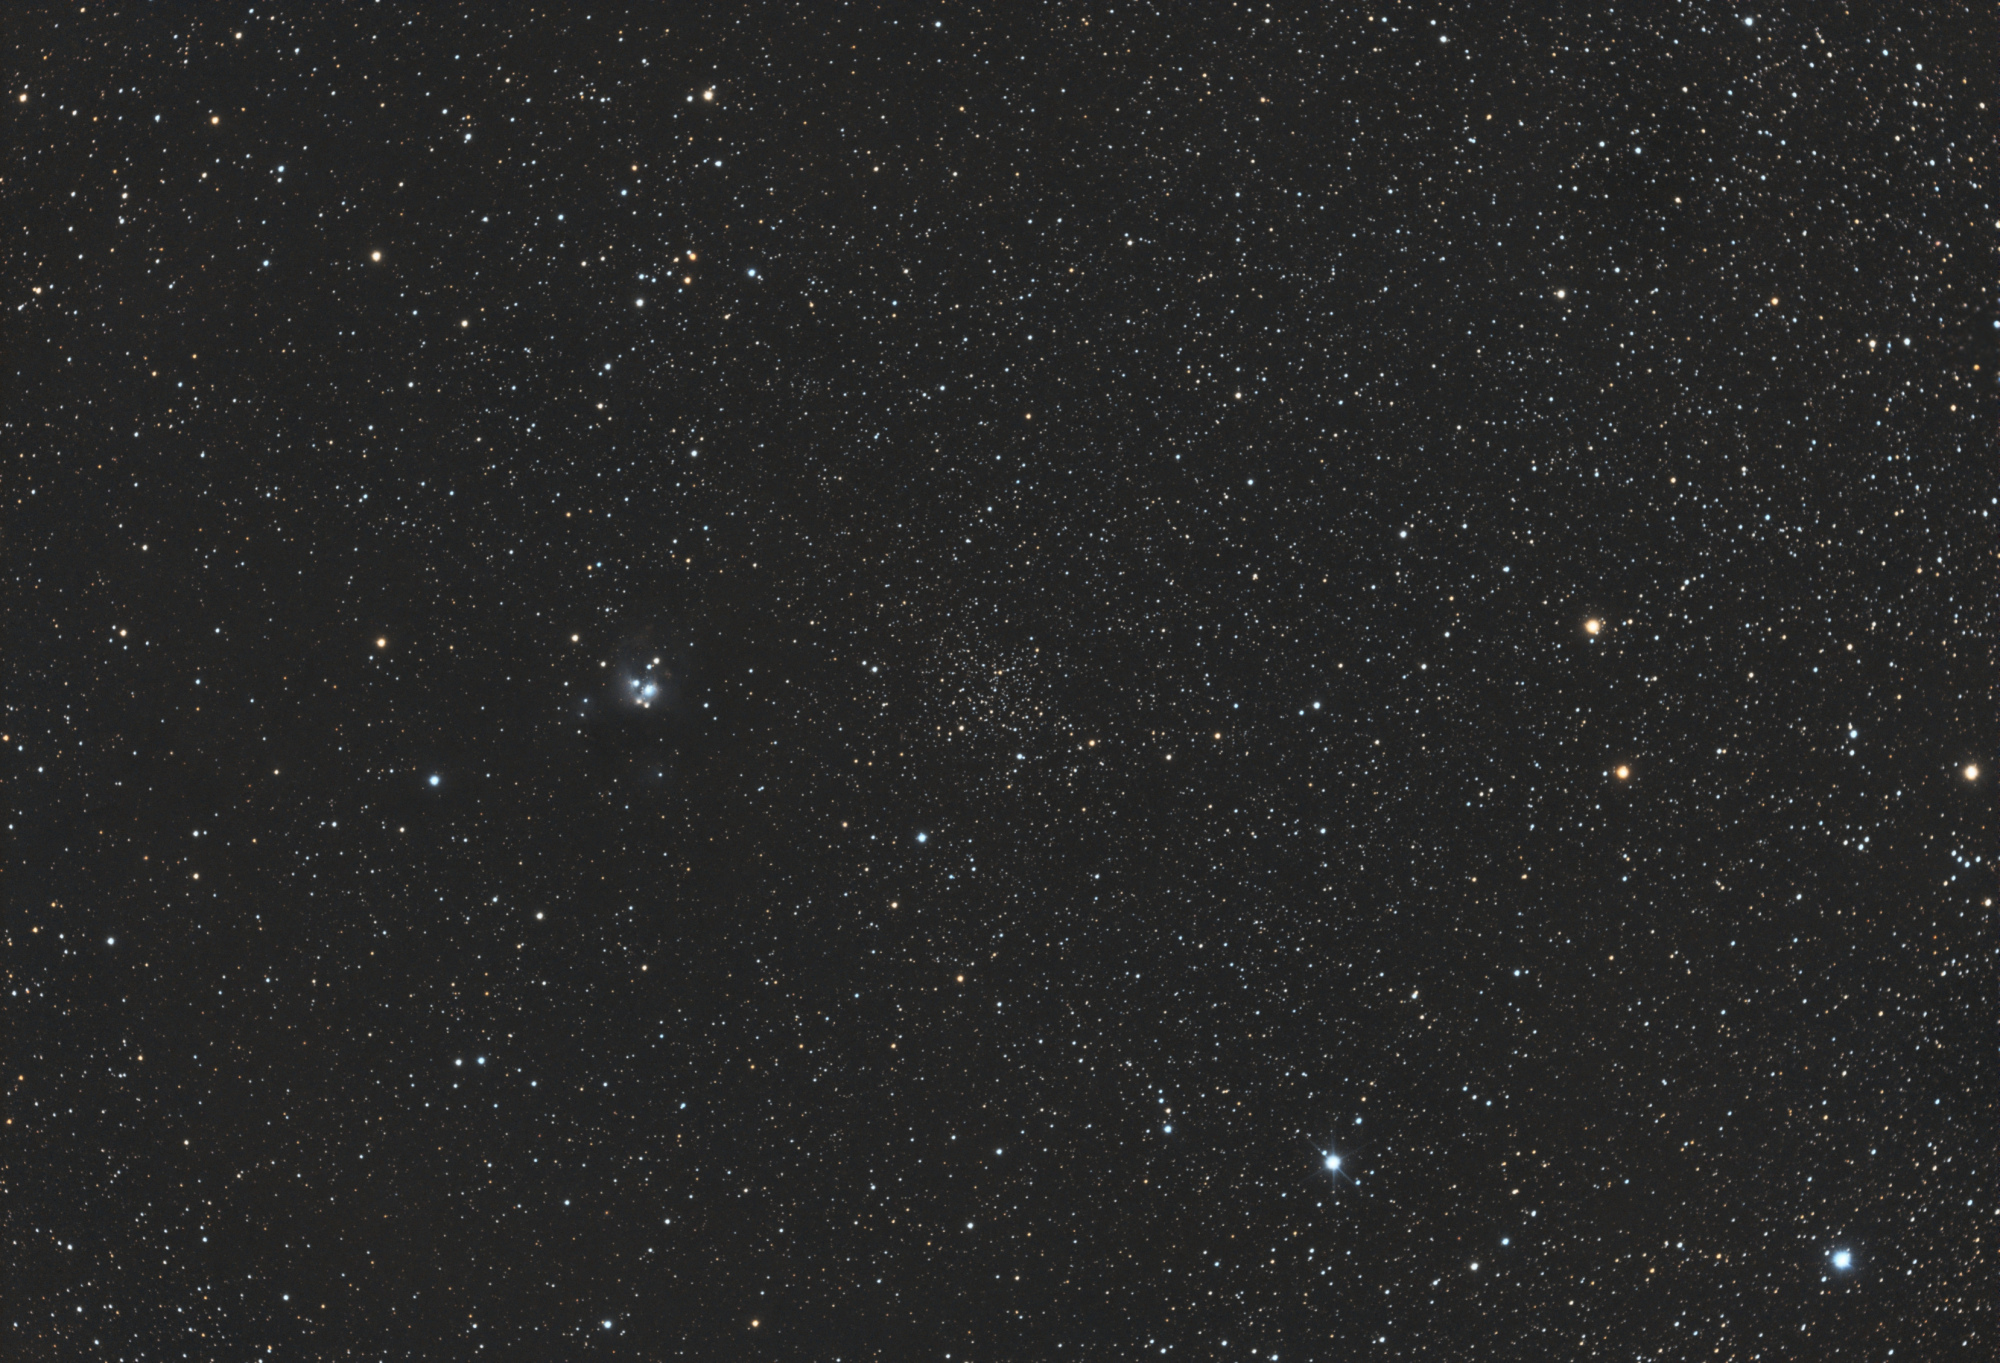 61a532f16da4c_NGC7142_RGB-siril-Pixfinale.thumb.jpg.4c4f83a583c097388b39a51b1af6559a.jpg